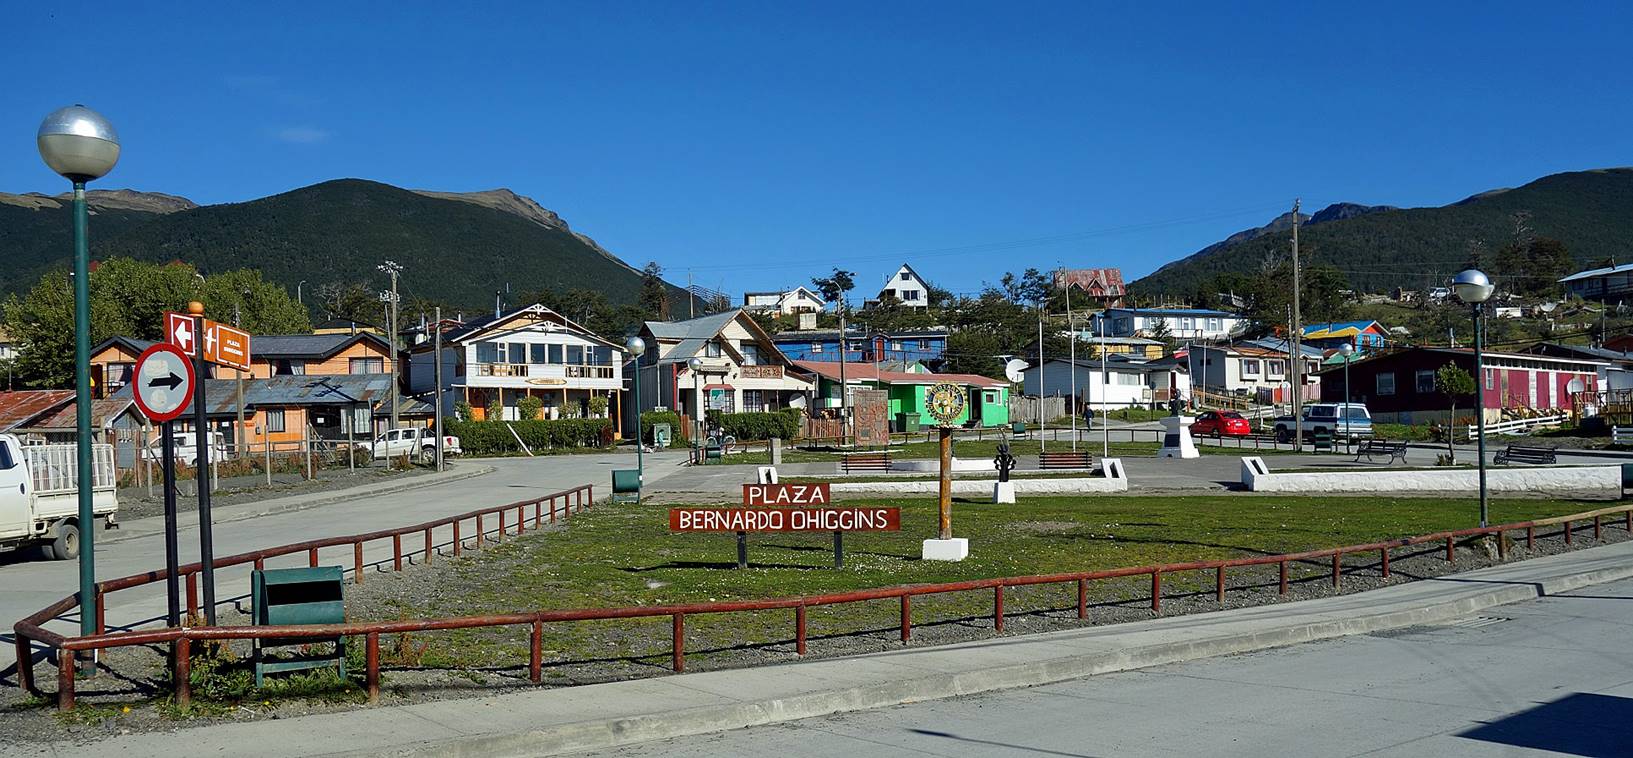 Với số dân ít ỏi, các tiện nghi phục vụ đời sống ở thành phố xa xôi Puerto Williams khá đơn giản. Ở đây chỉ có 1 ngân hàng, 1 trạm xăng (đóng cửa vào chủ nhật), 1 trường mẫu giáo và 1 trường trung học, 1 bảo tàng, 1 nhà thờ, vài cửa hàng nhỏ bán thực phẩm, khách sạn nhỏ. Nơi đây không có rạp chiếu phim hay các tụ điểm giải trí nào. Có một bệnh viện mới nhưng trang thiết bị nghèo nàn nên gặp trường hợp khẩn cấp phải bay vào thành phố Punta Arenas. 